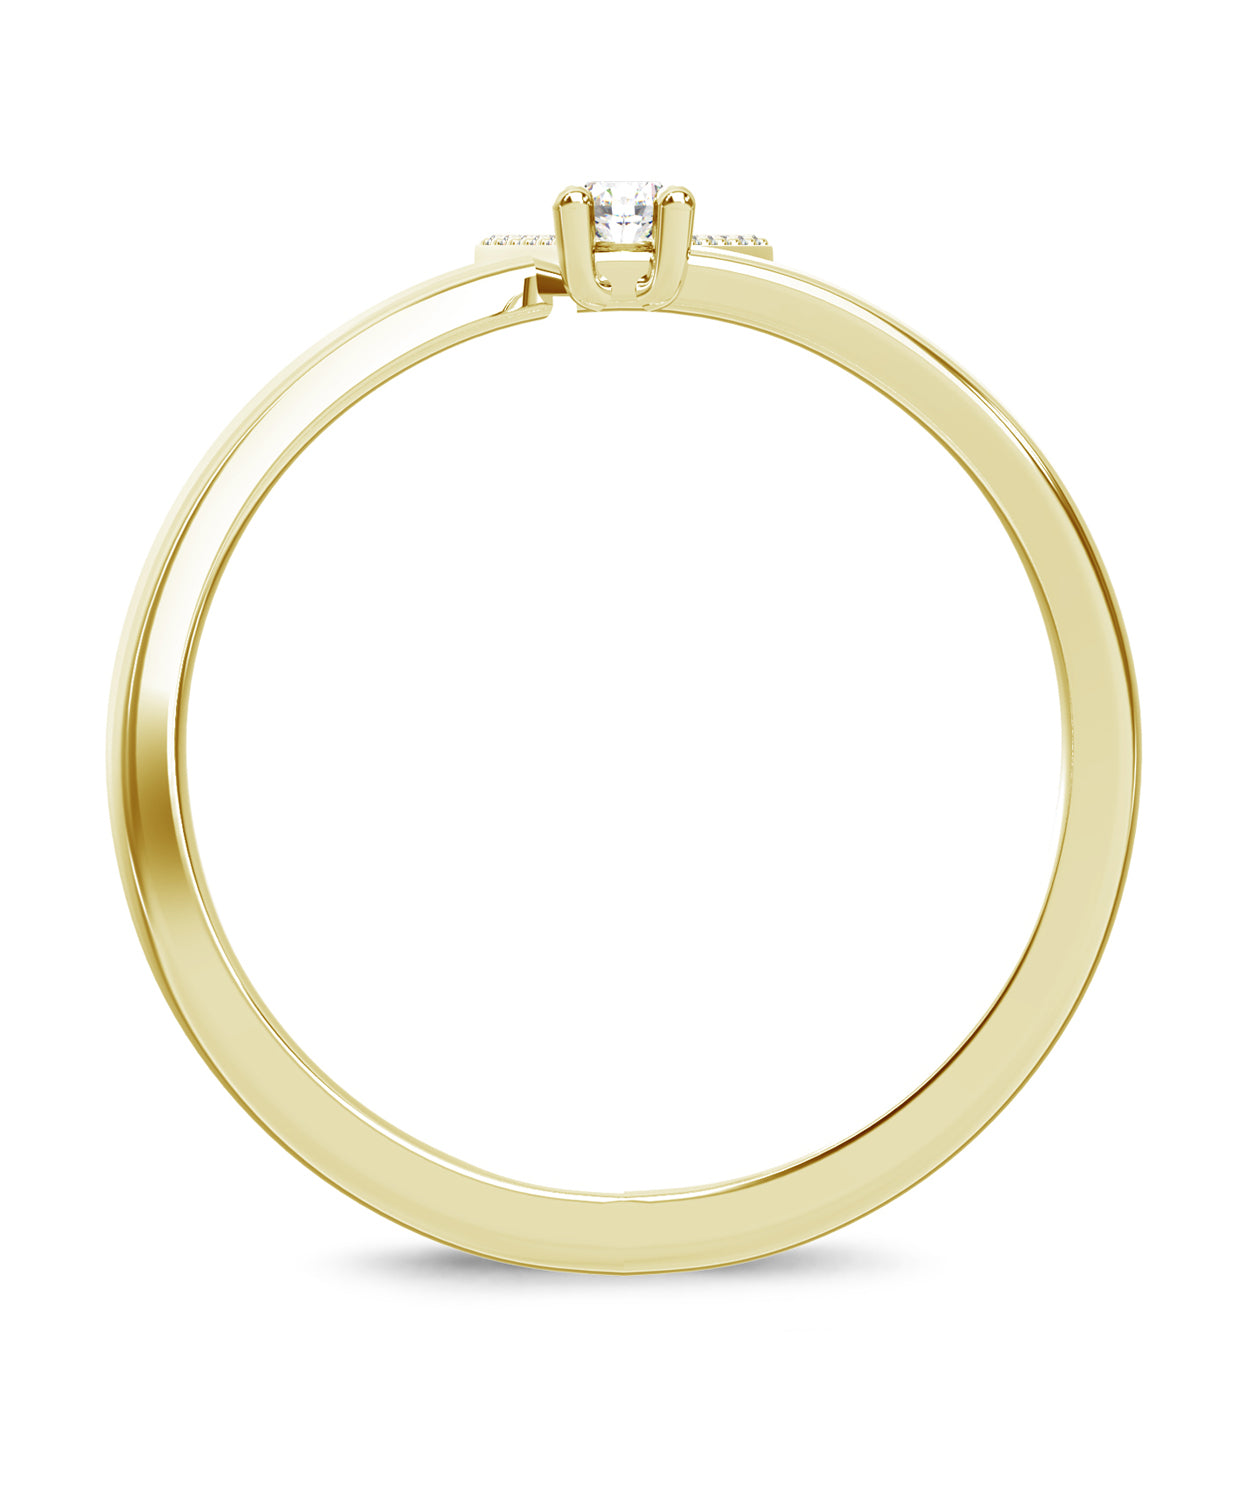 ESEMCO Diamond 18k Yellow Gold Letter V Initial Open Ring View 2